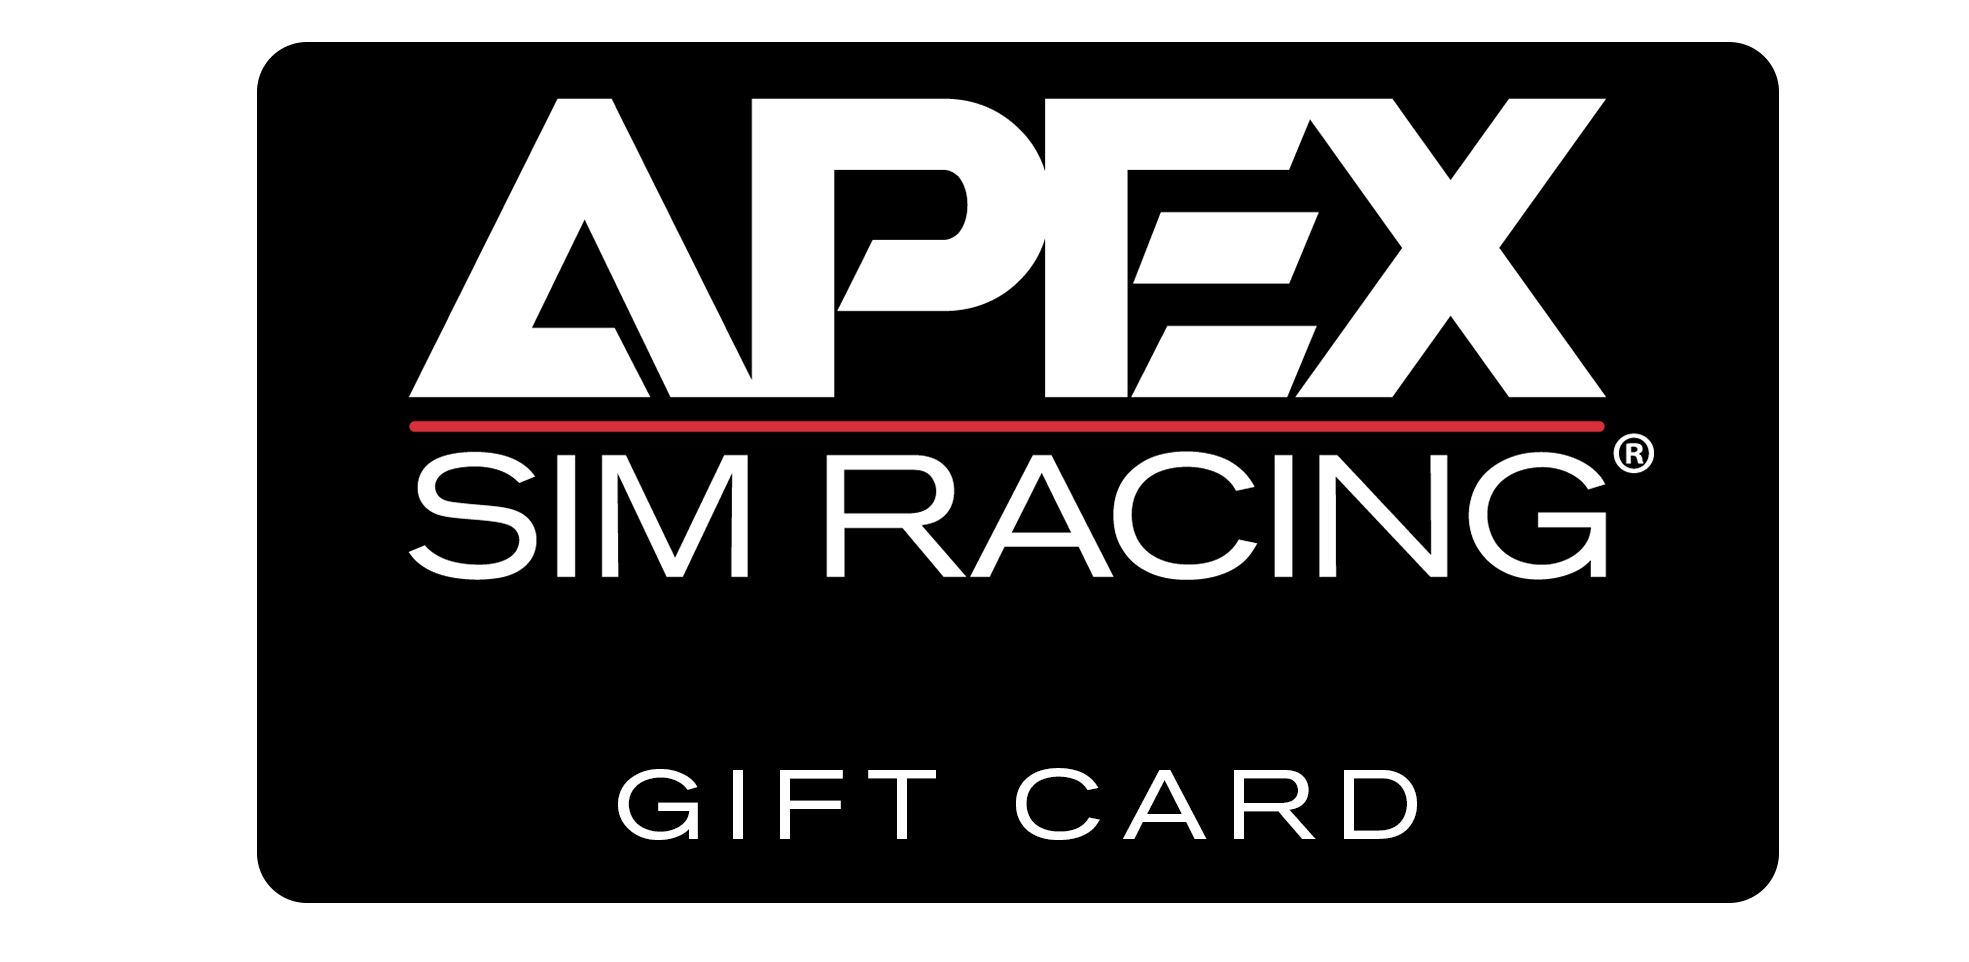 Apex Sim Racing - Gift Card